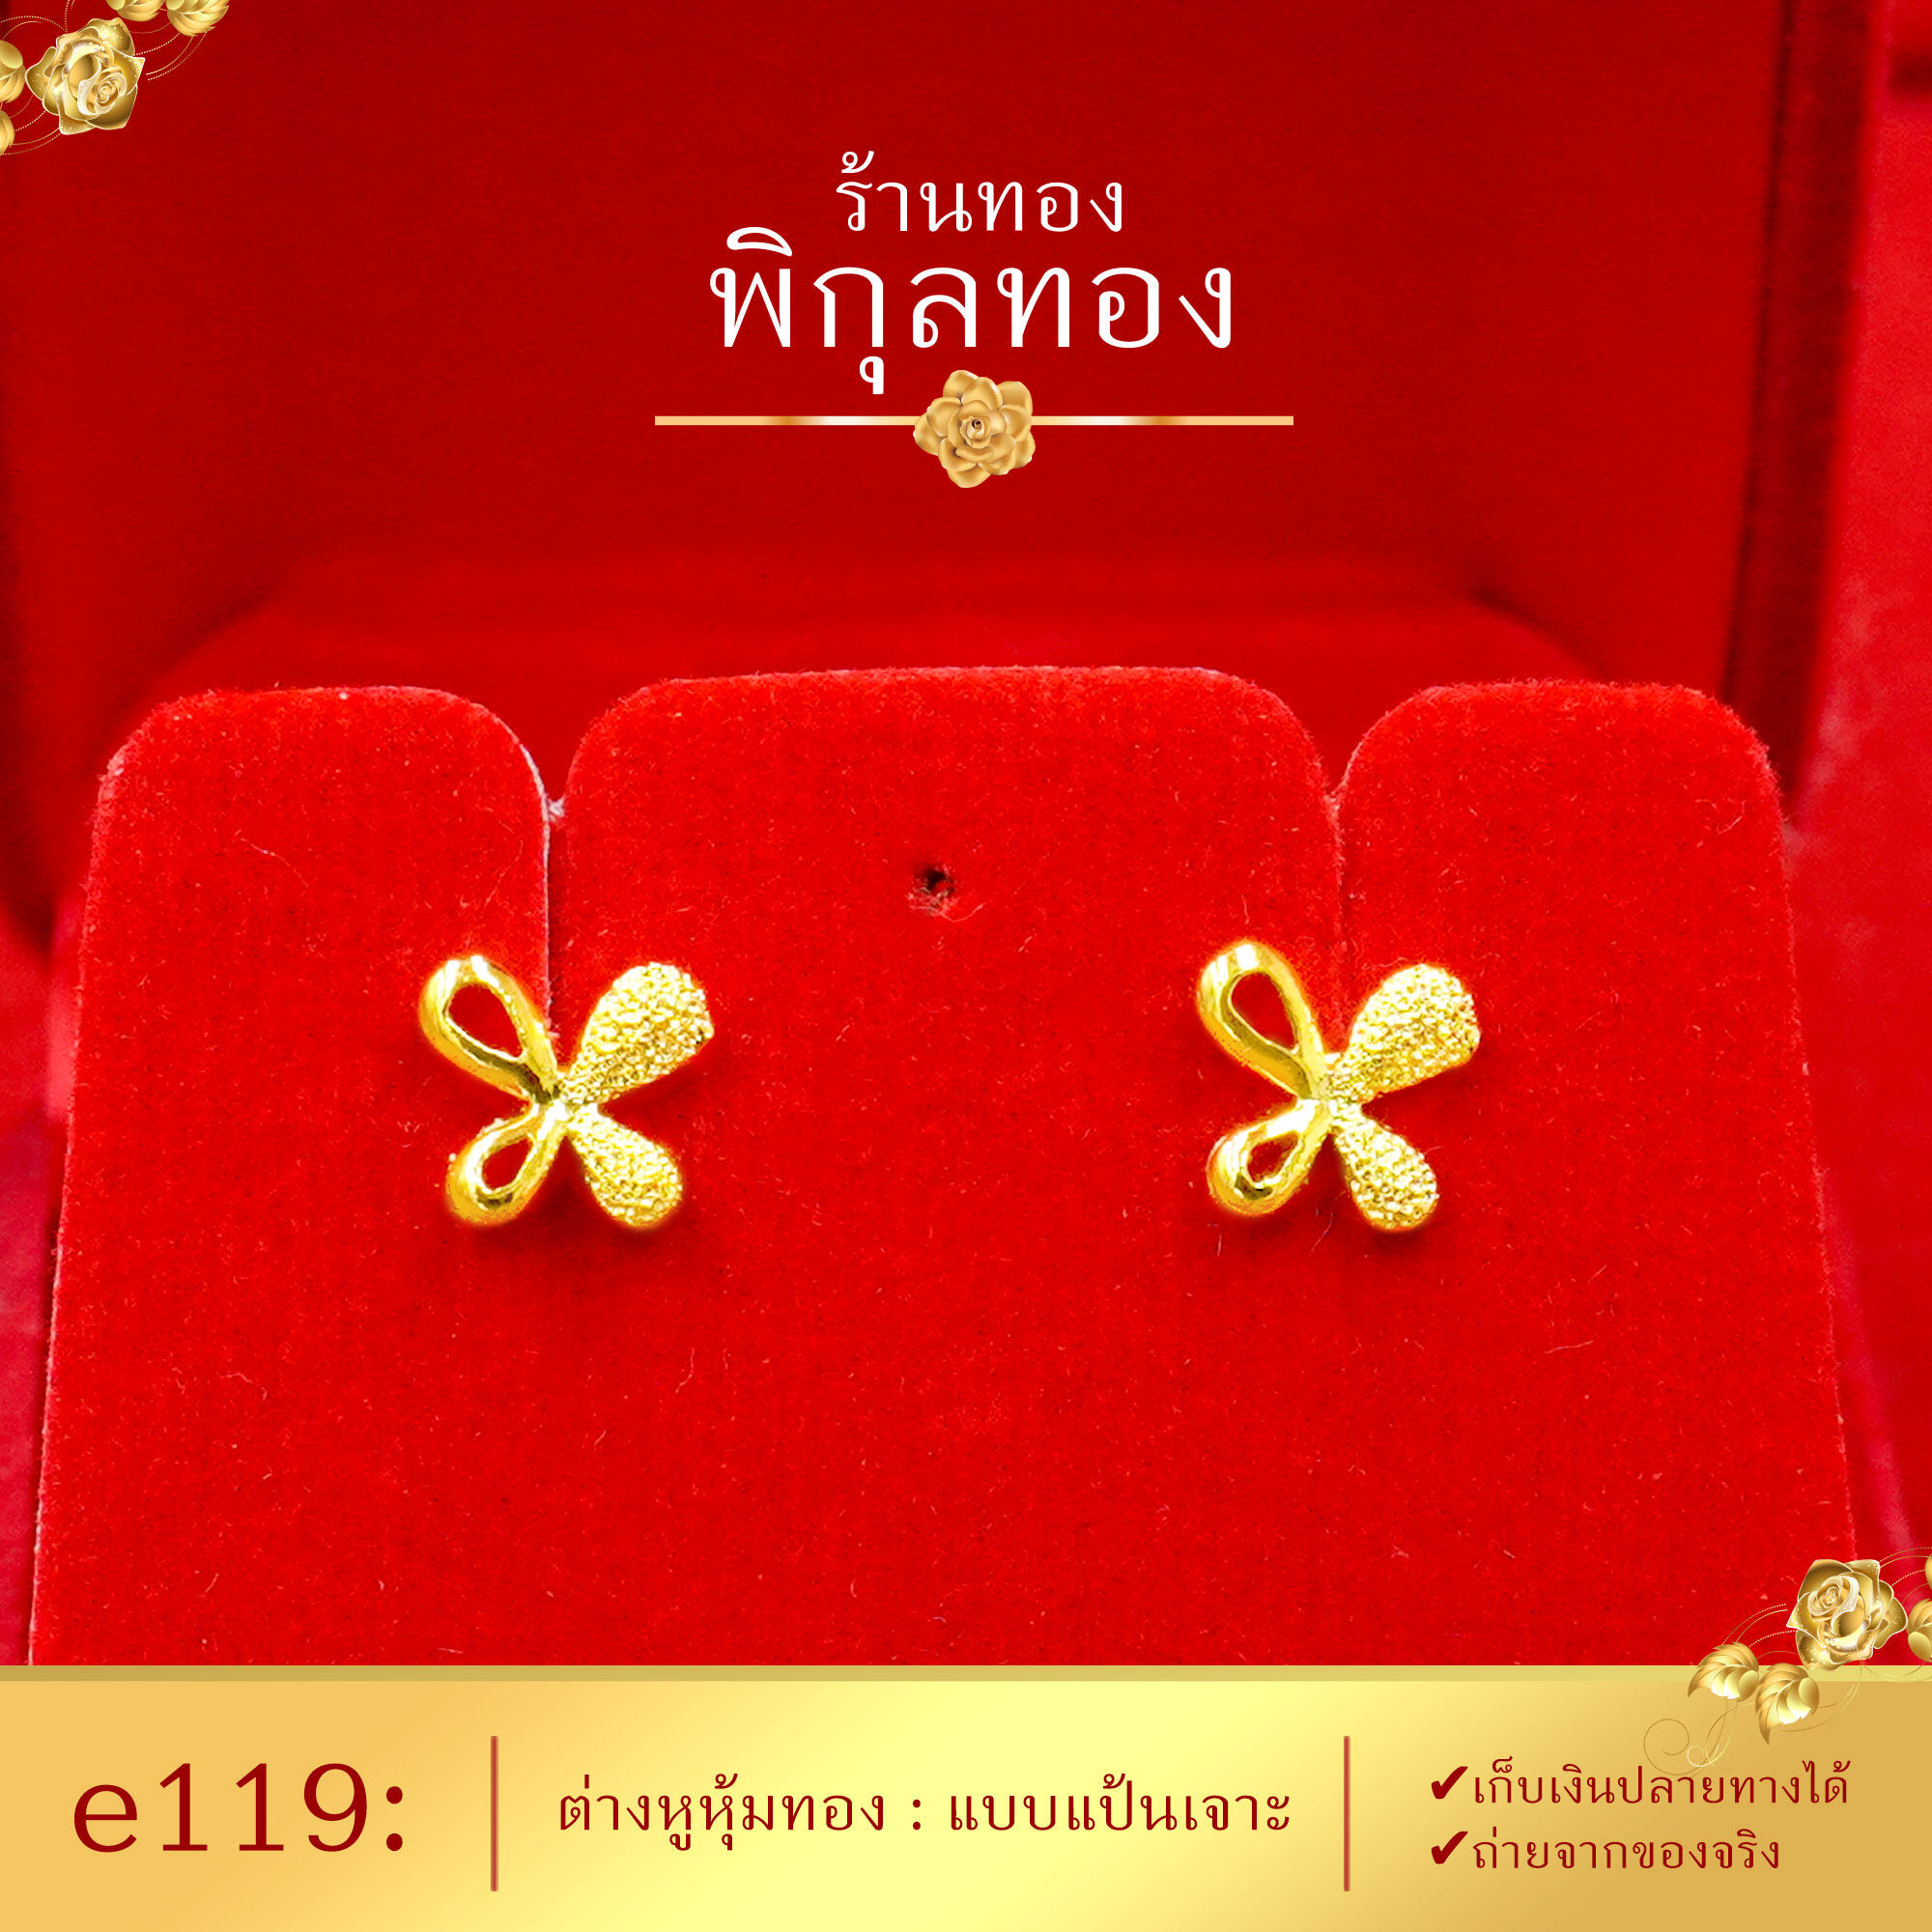 Pikunthong e119 ต่างหู ต่างหูทอง ต่างหูหุ้มทองแท้ ตุ้มหูทอง ต่างหูทองหุ้ม พิกุลทอง [หุ้มทองแท้ เกรดพิเศษ]